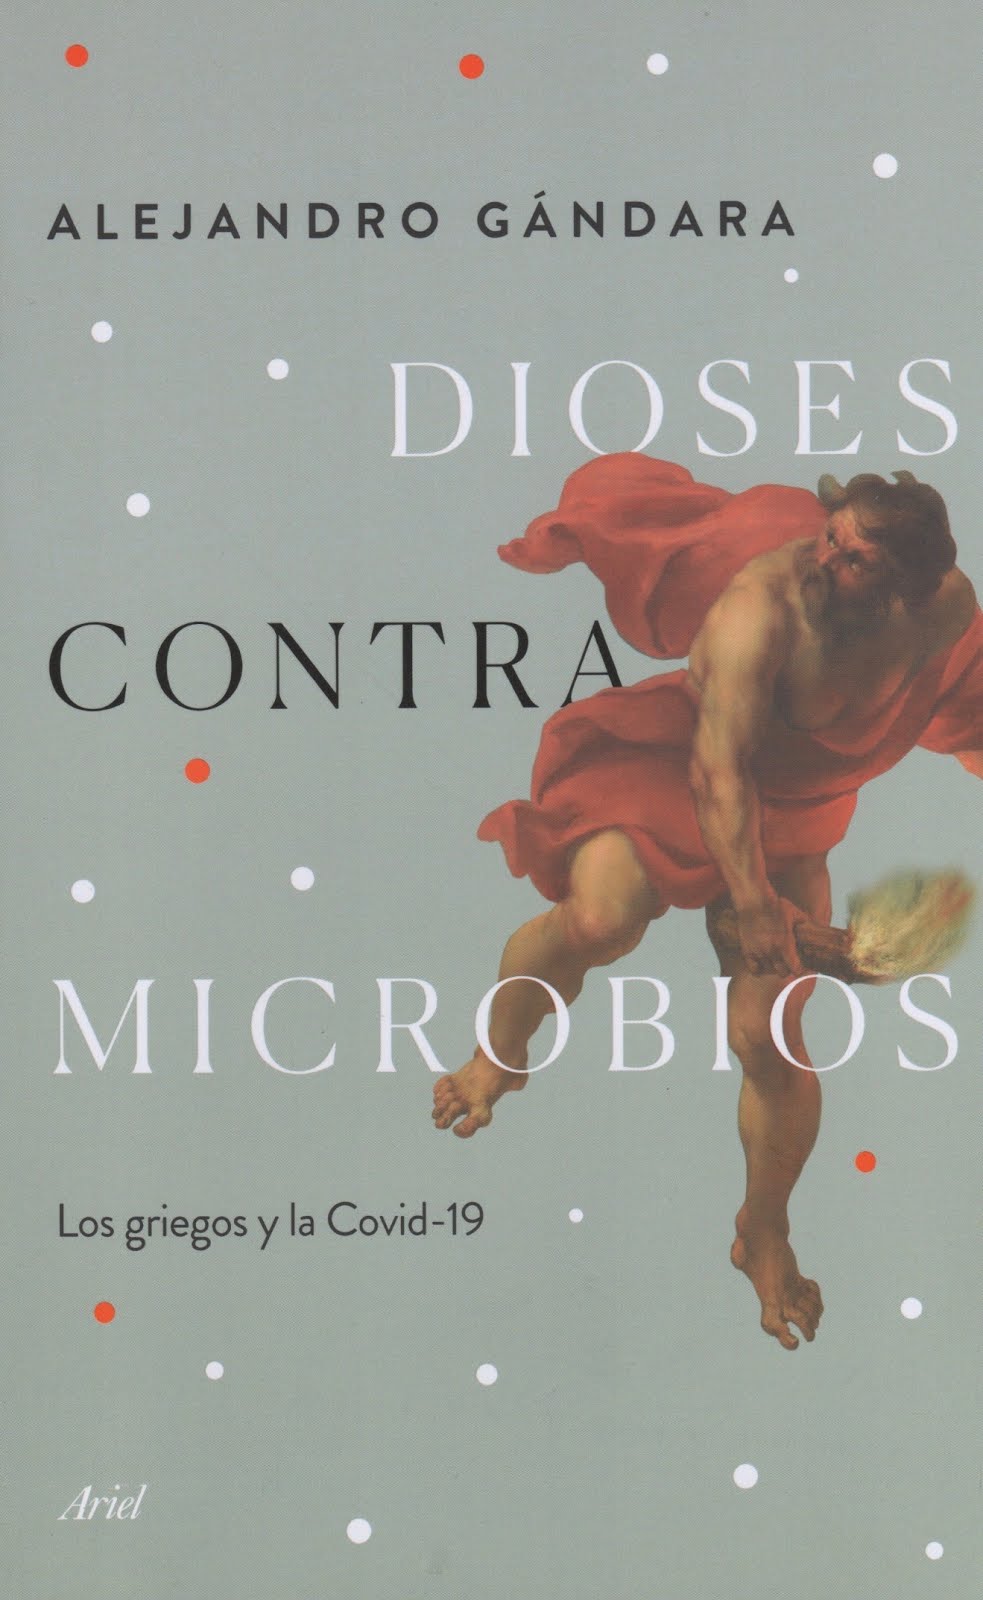 Alejandro Gándara (Dioses contra microbios) Los griegos y la Covid-19